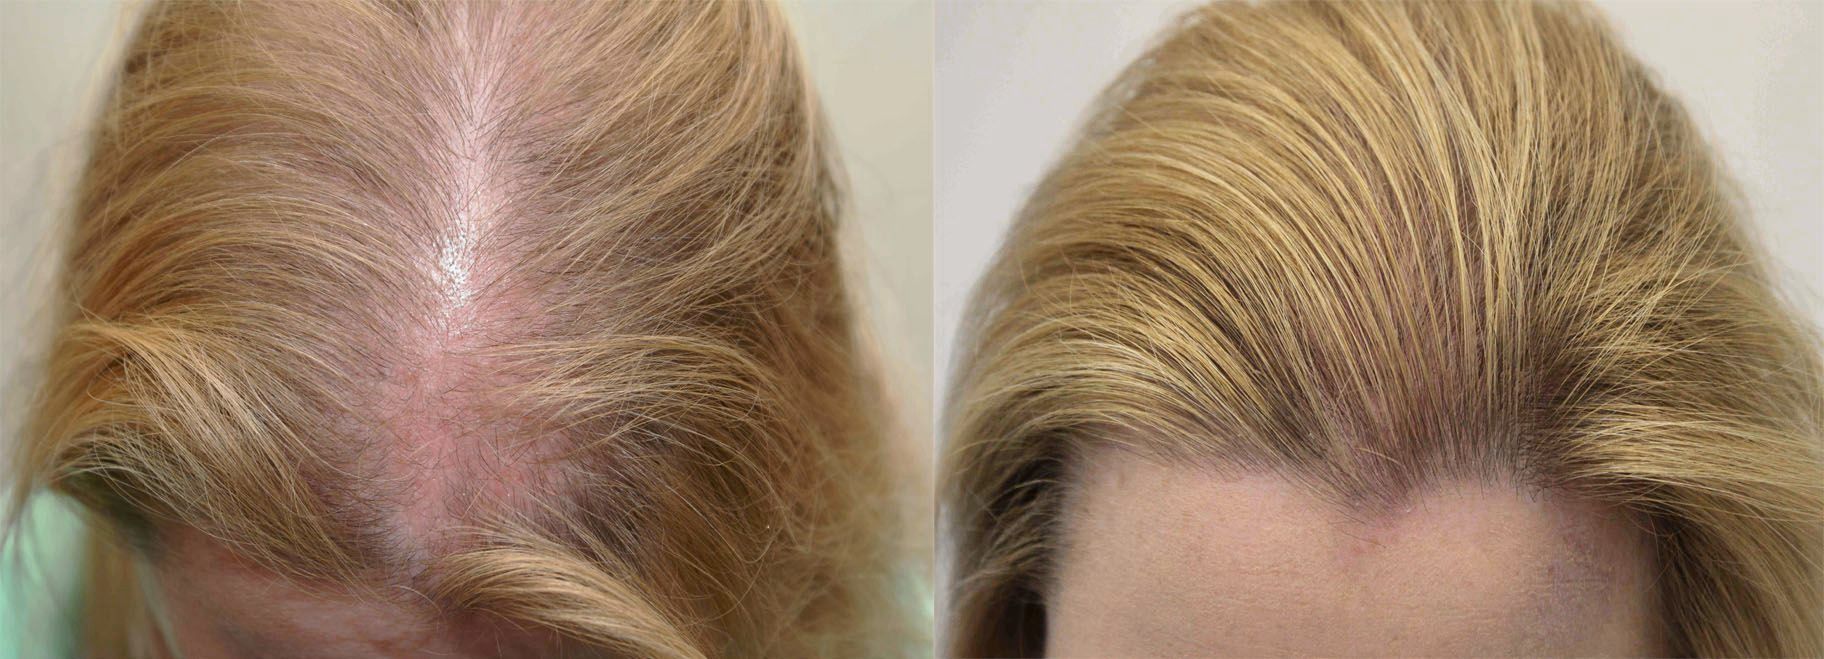 Растут корни волос. Поредение волос у женщин. Мезотерапия волос до и после.